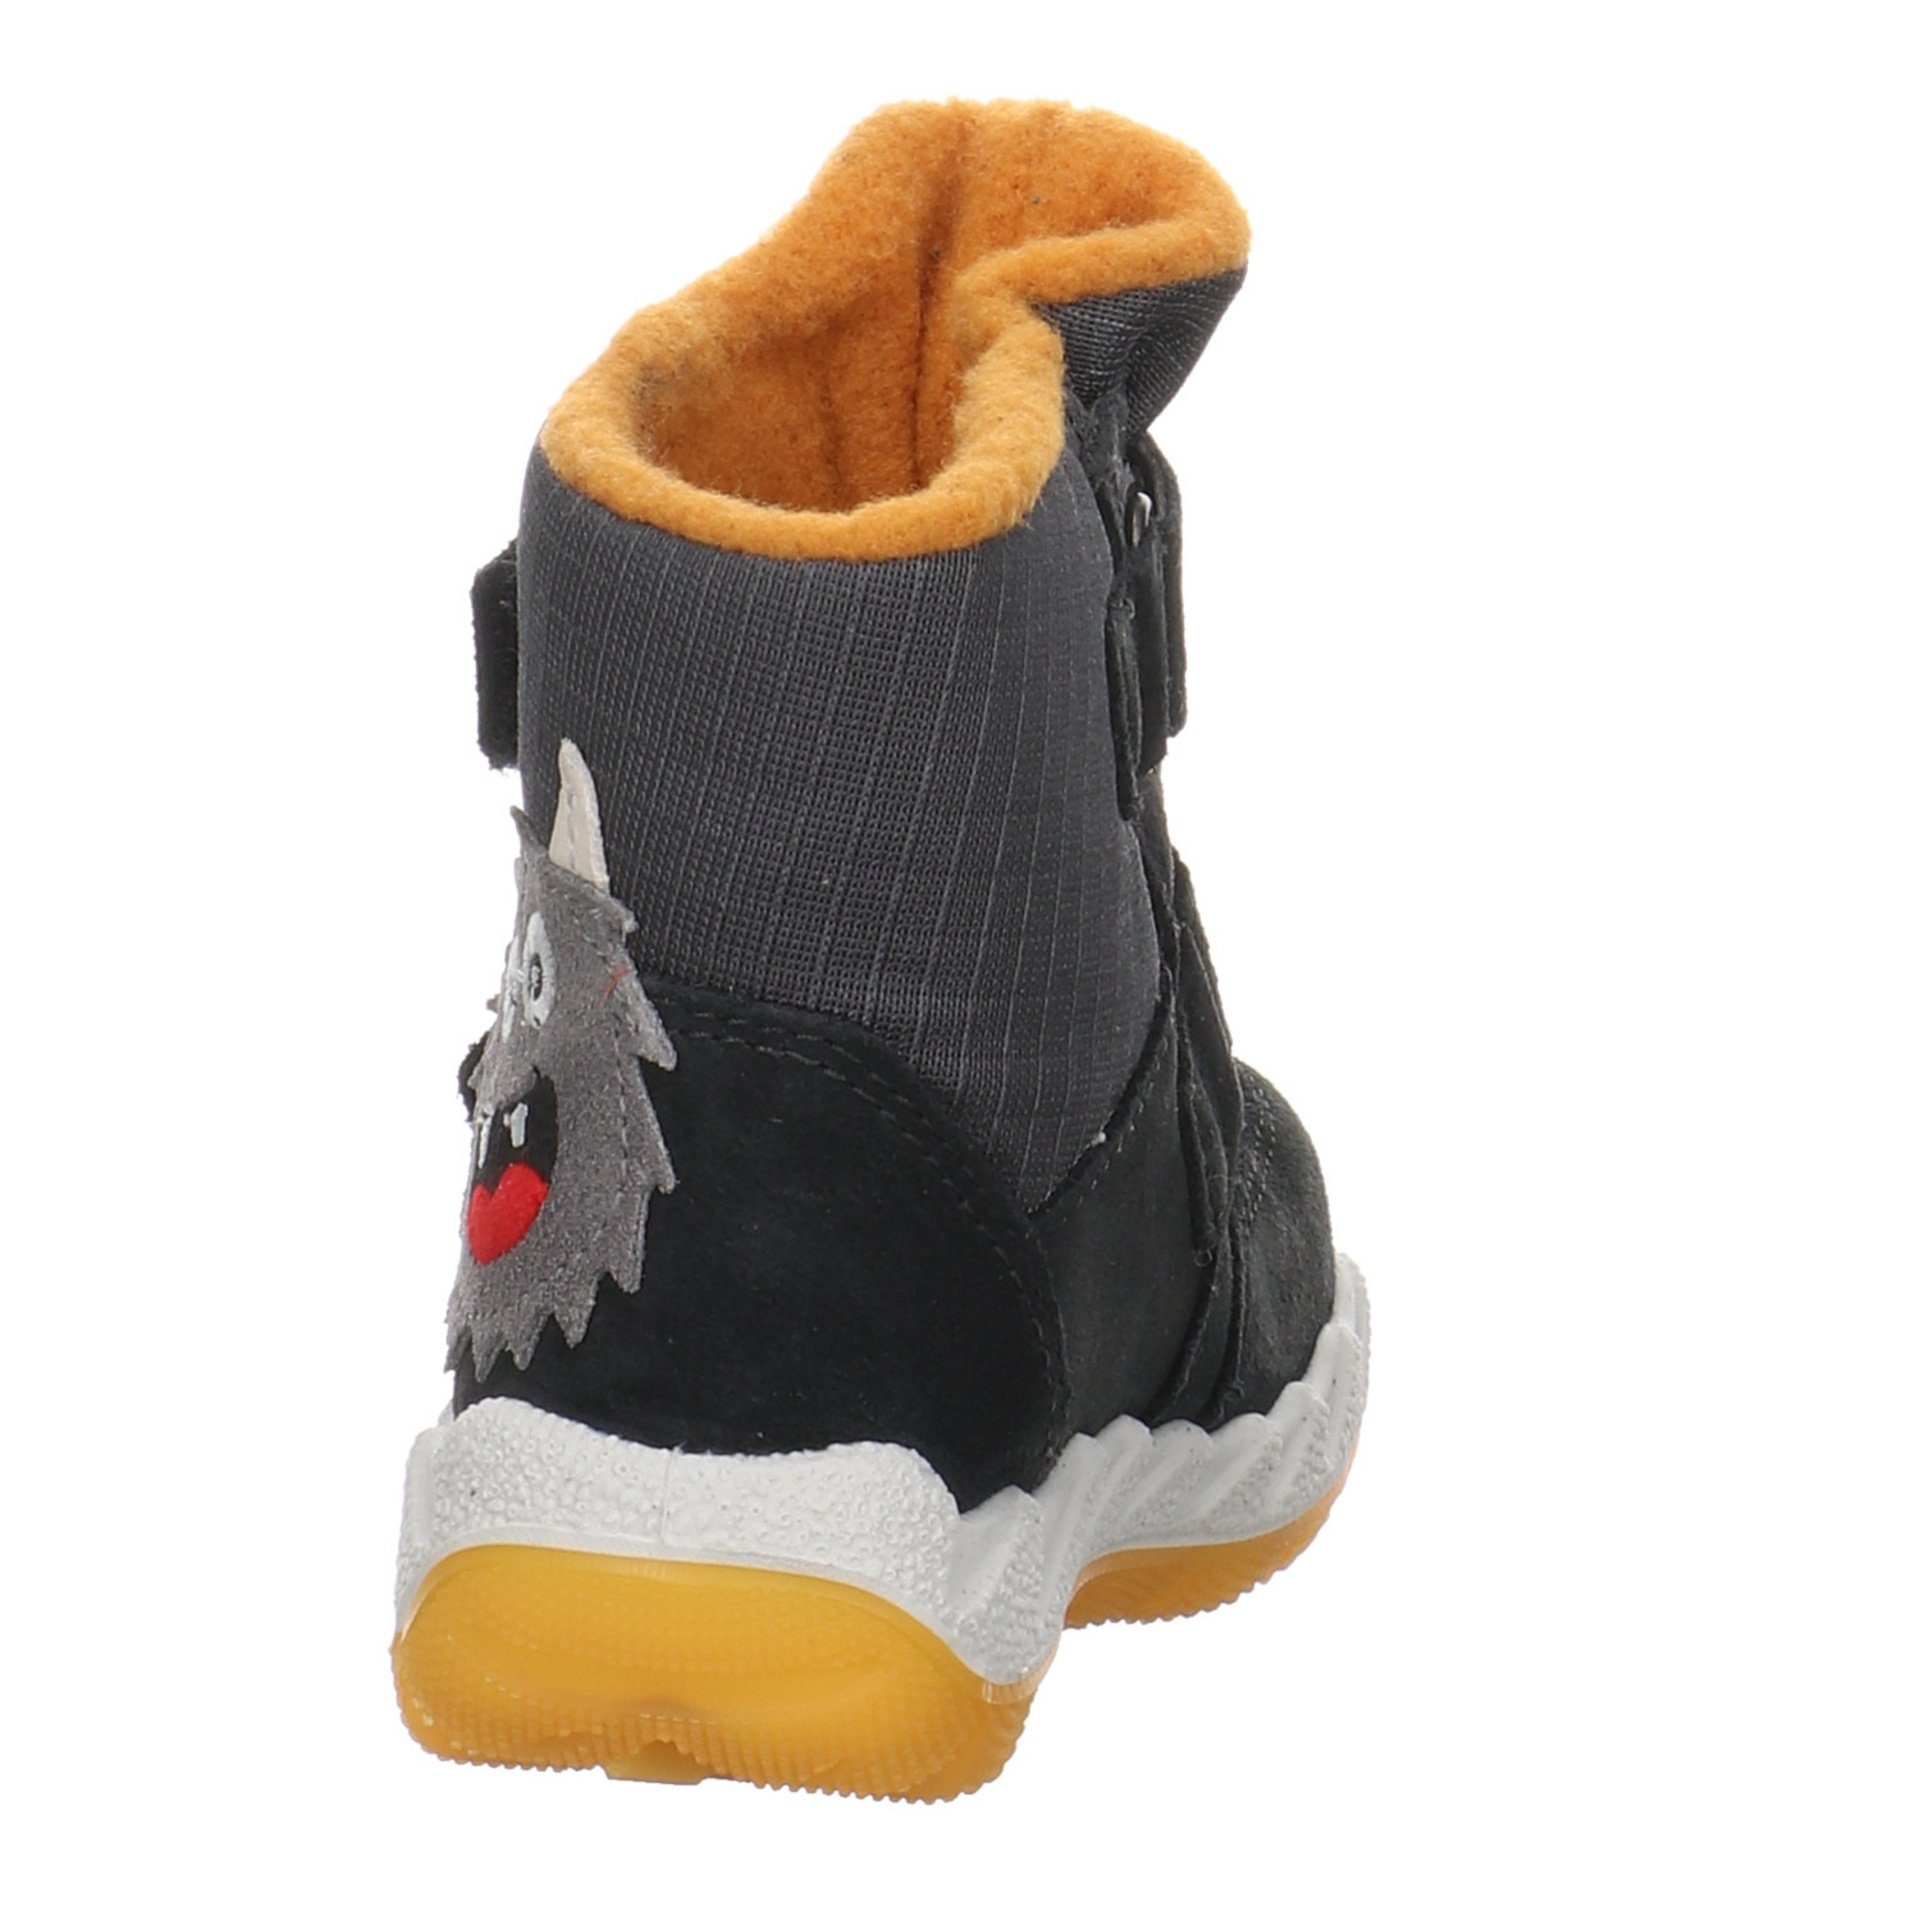 gelb grau Krabbelschuhe Baby Boots Lauflernschuhe Leder-/Textilkombination Icebird Superfit Lauflernschuh